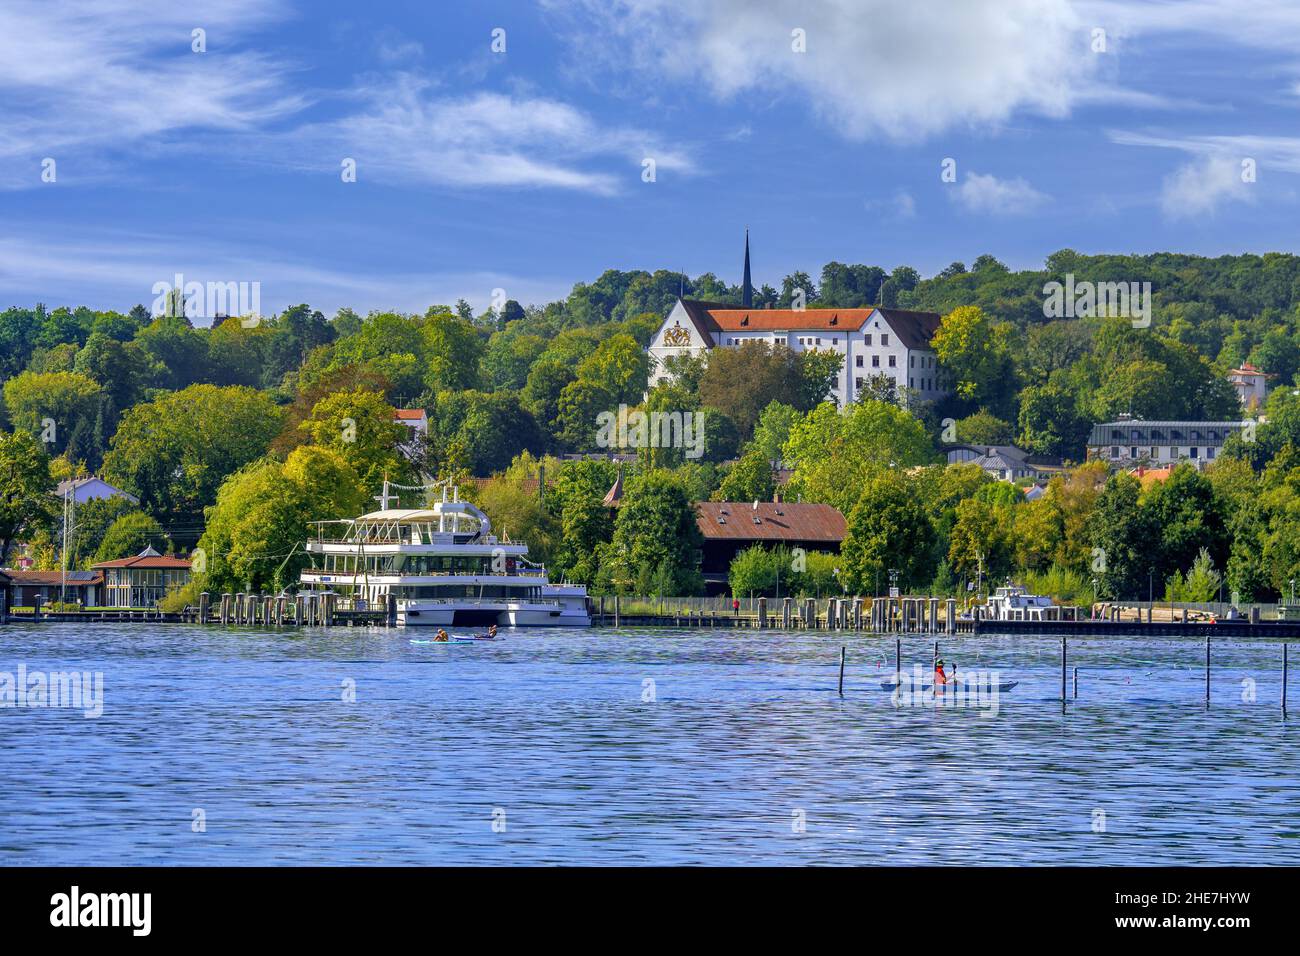 Starnberg on Lake Starnberg, Bavaria, Germany Stock Photo